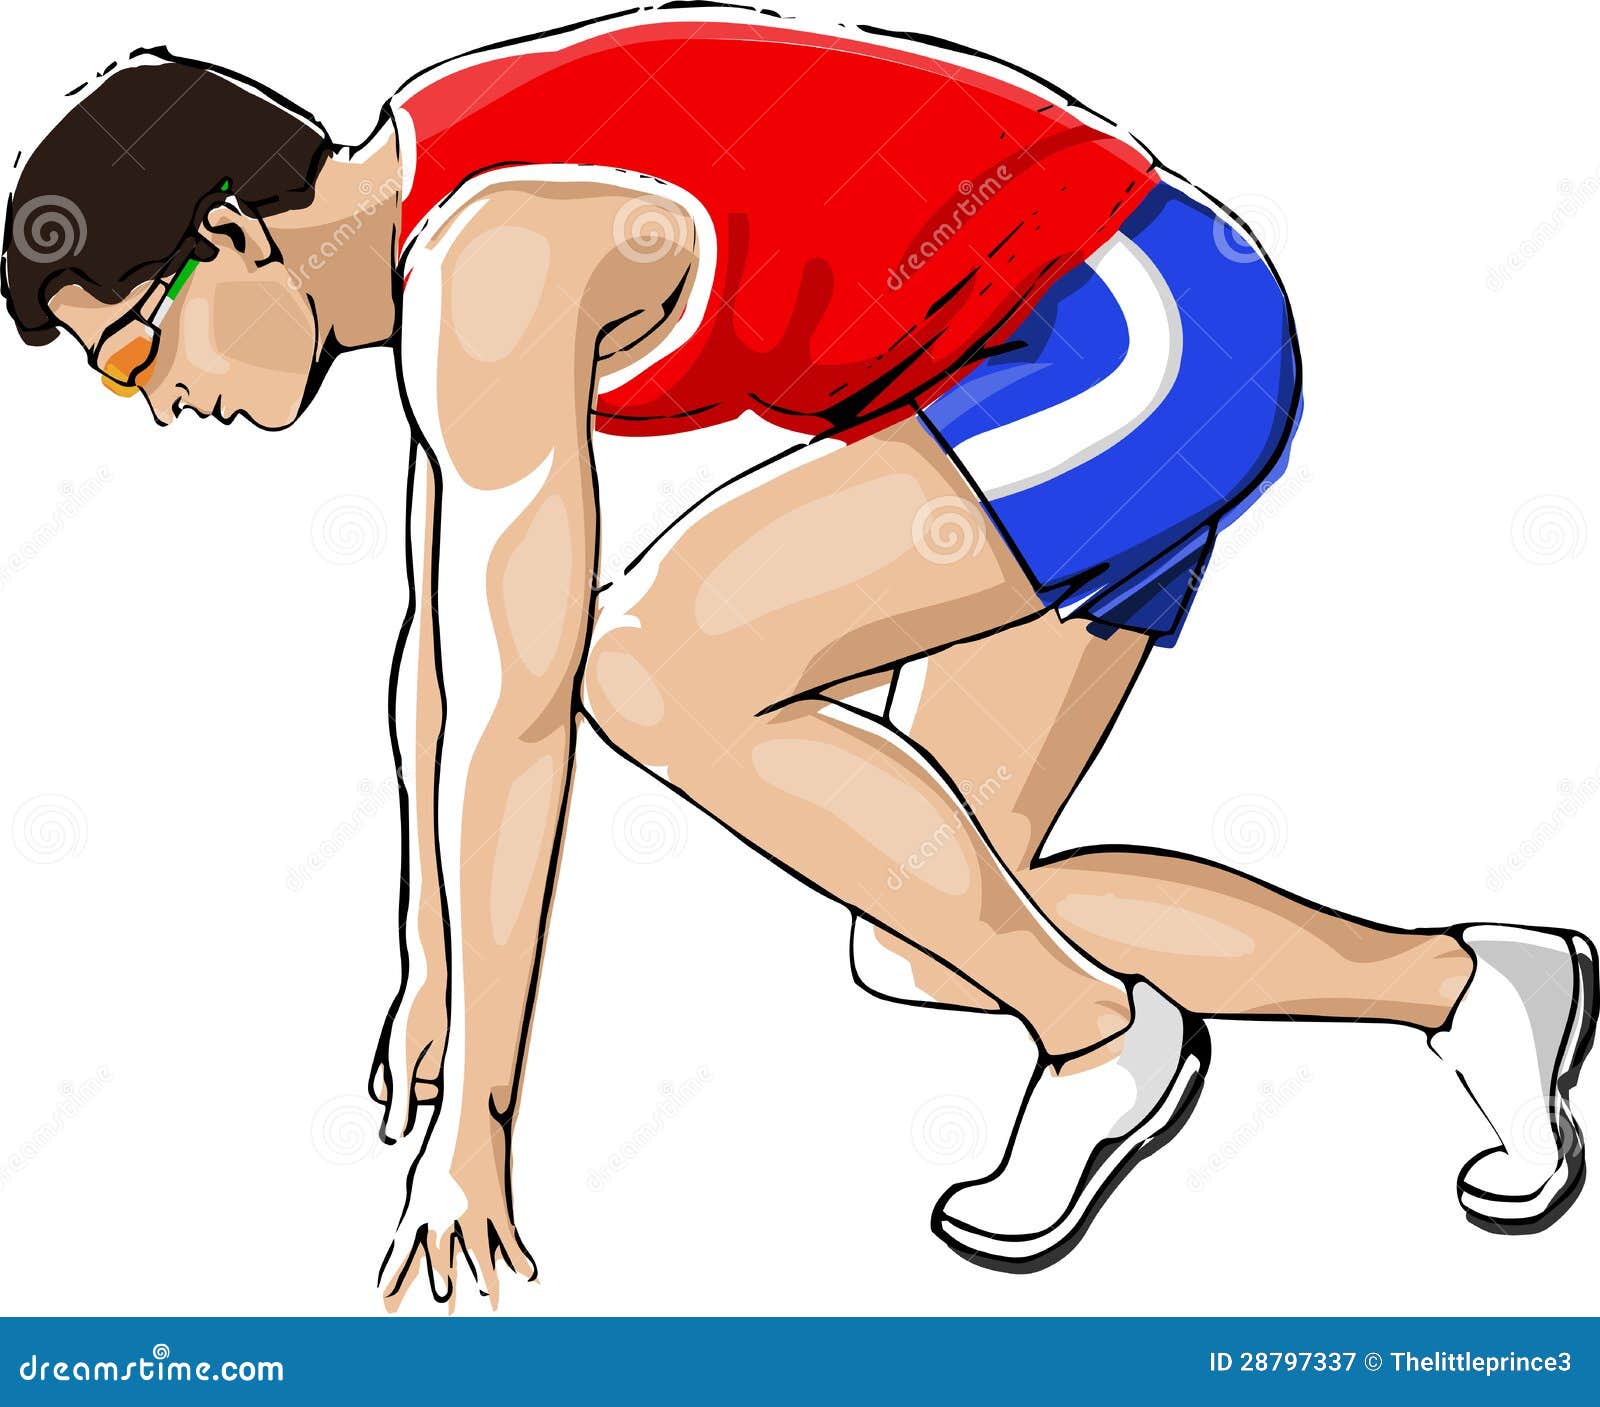 athlete sprinting